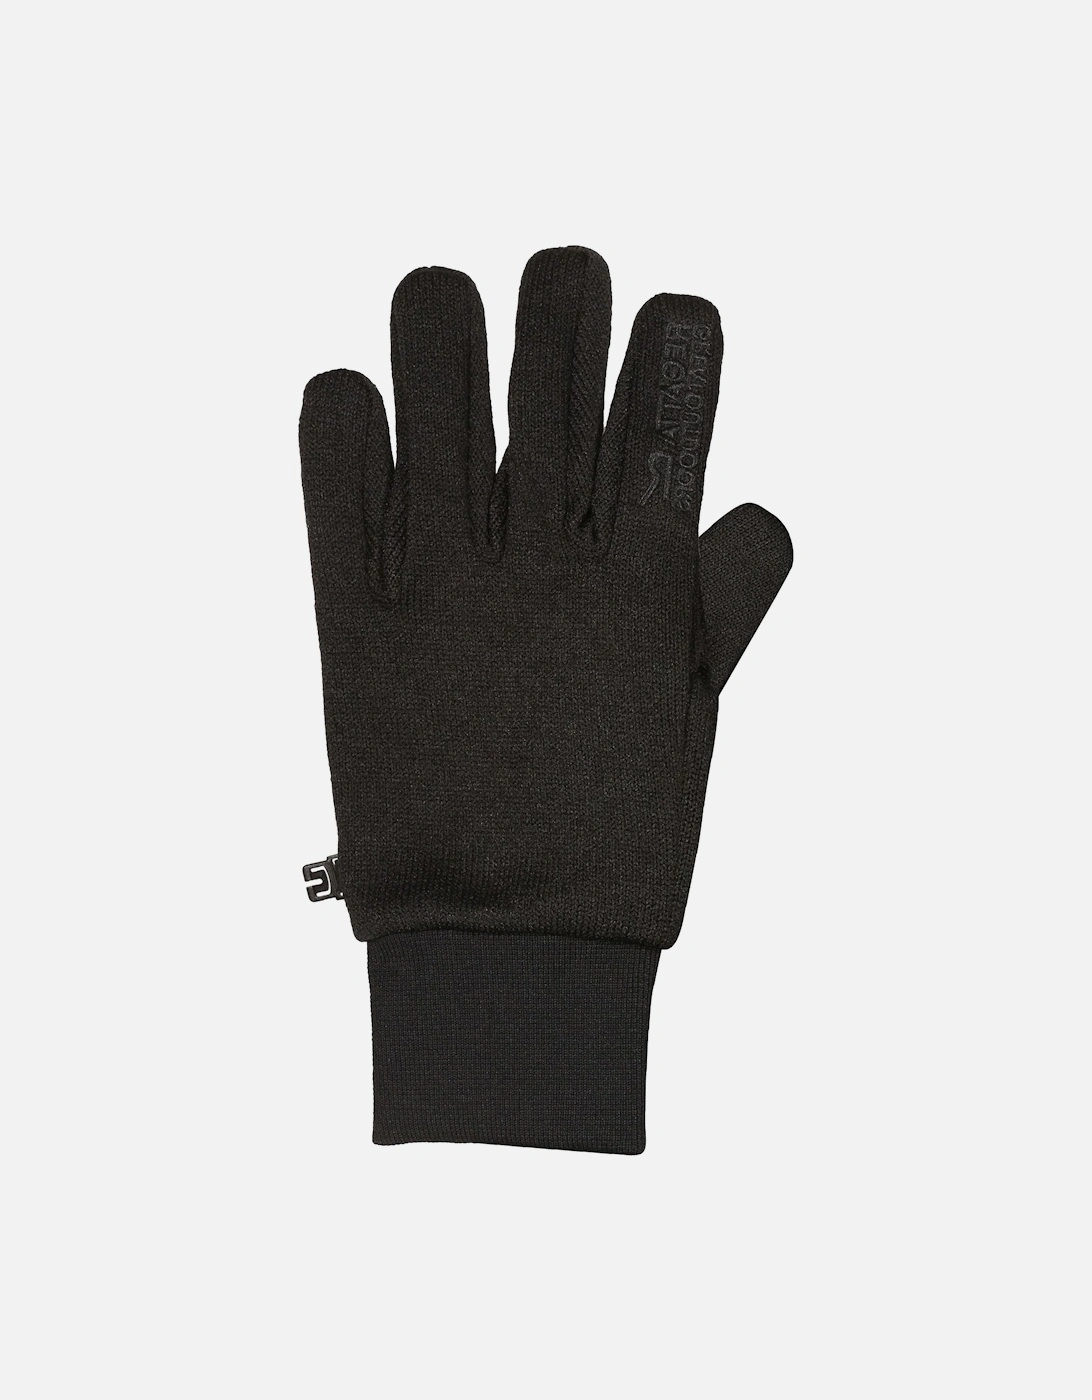 Mens Veris Winter Gloves